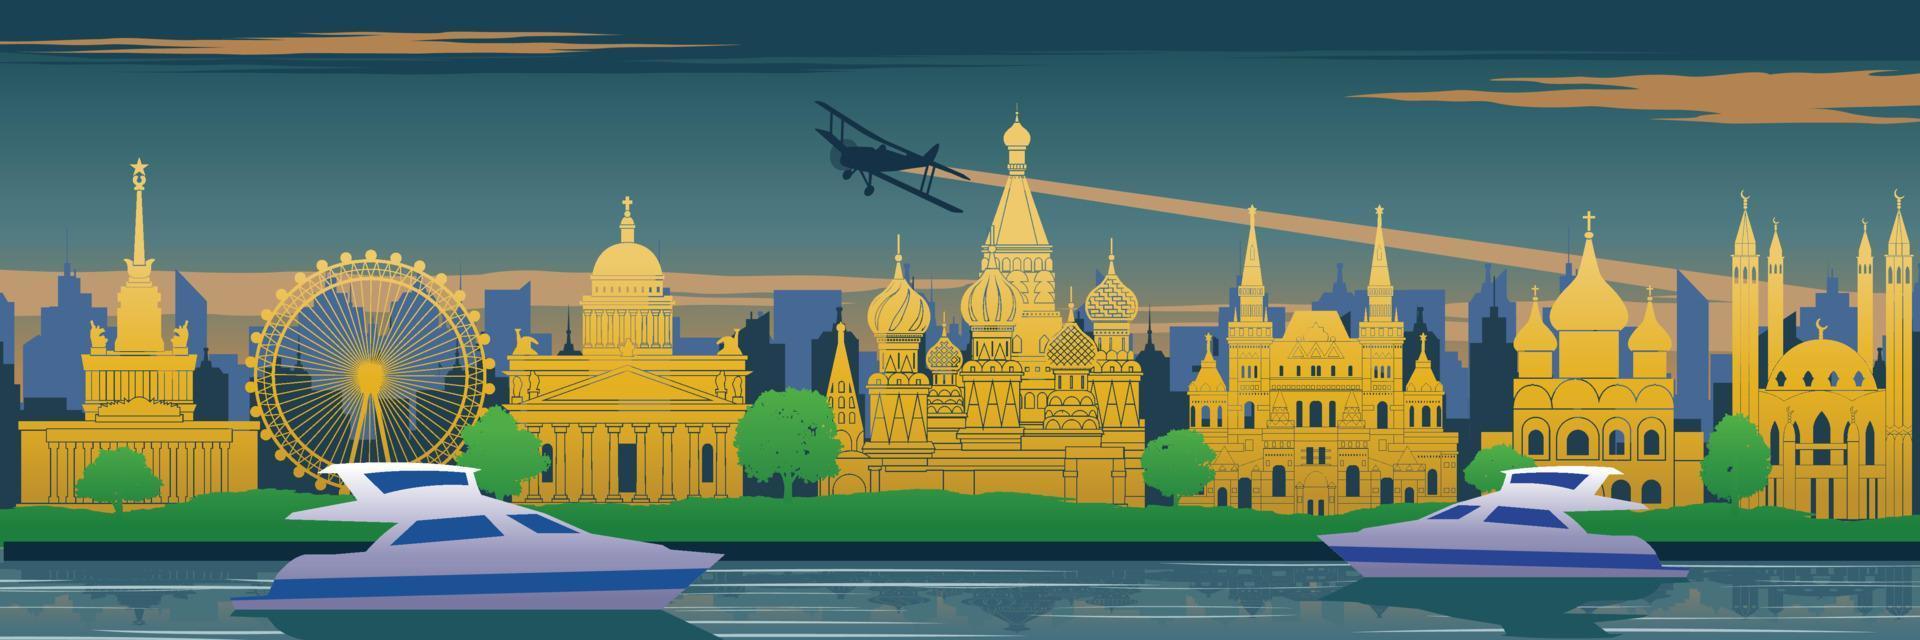 Marco famoso da Rússia atrás do rio e iate em design de cenário, destino de viagem, design de silhueta, cor amarela azul e verde vetor